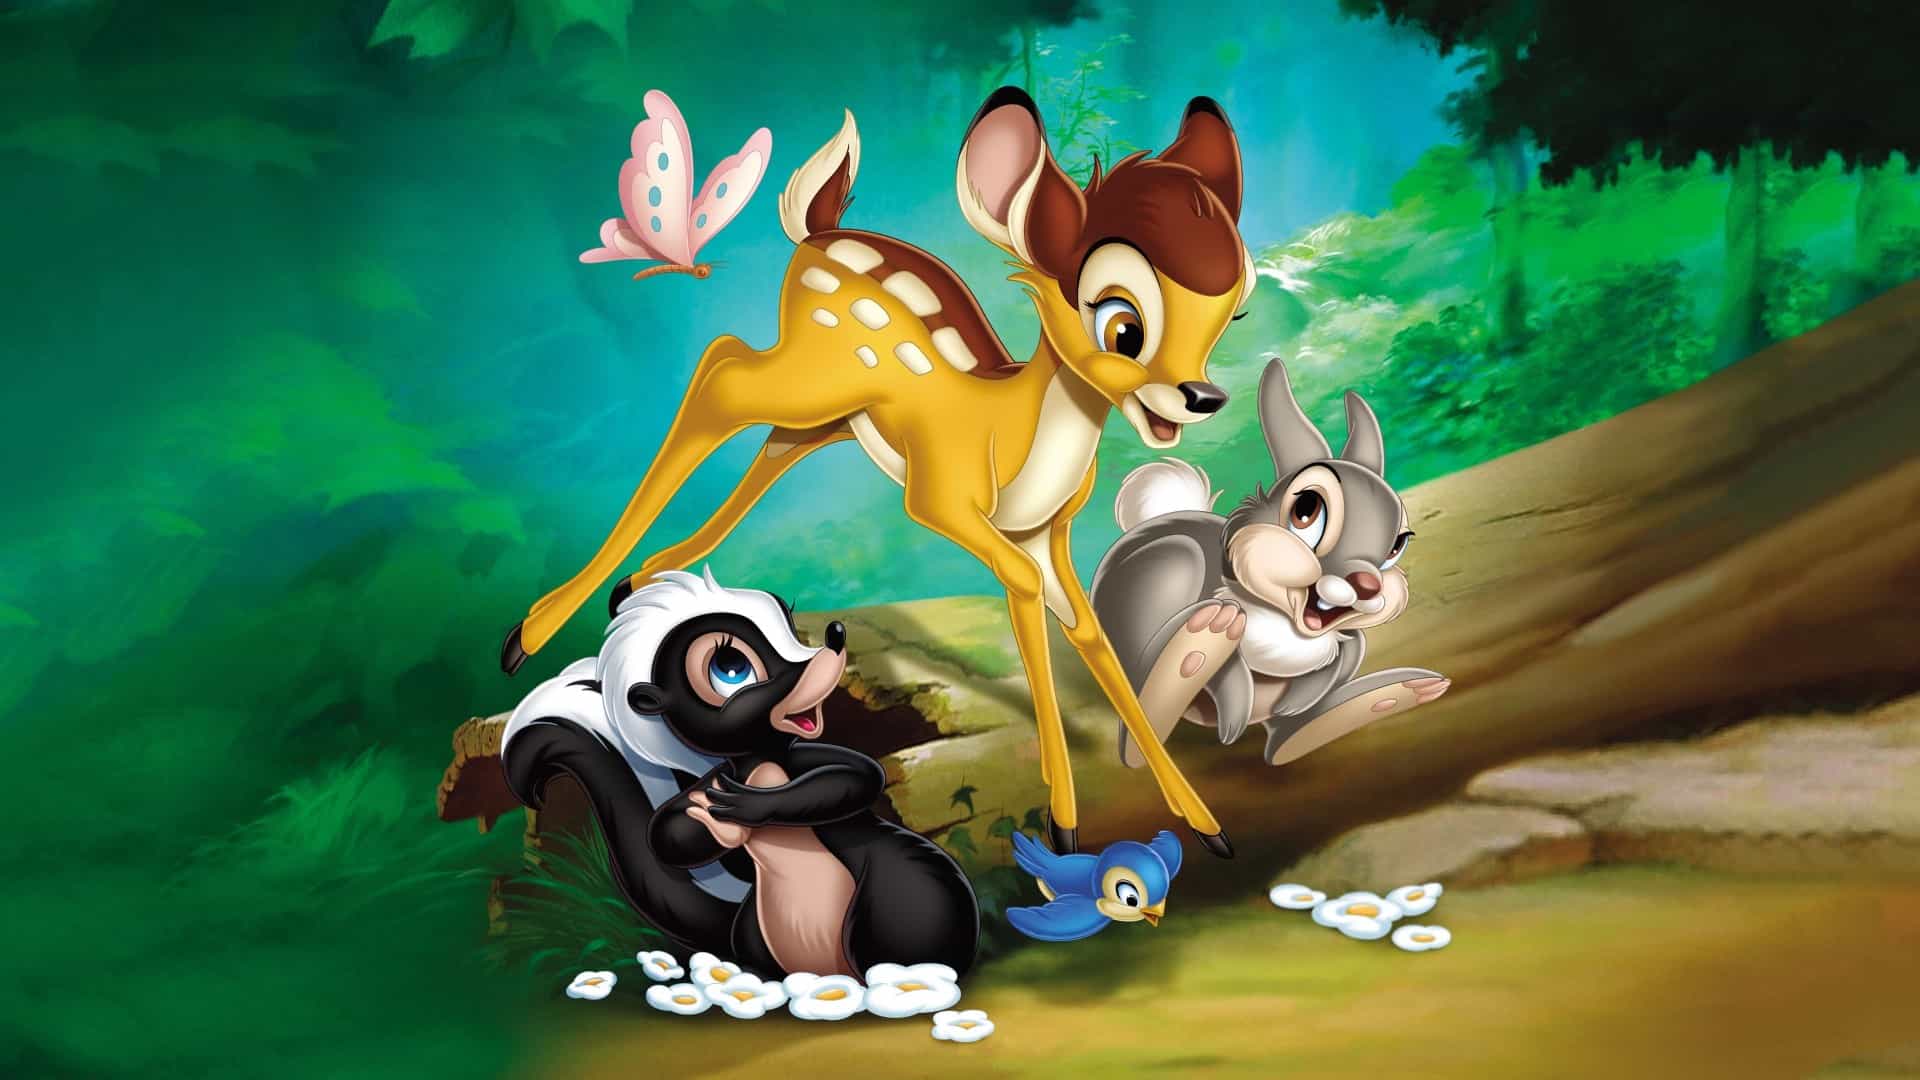 دانلود انیمیشن Bambi 1942